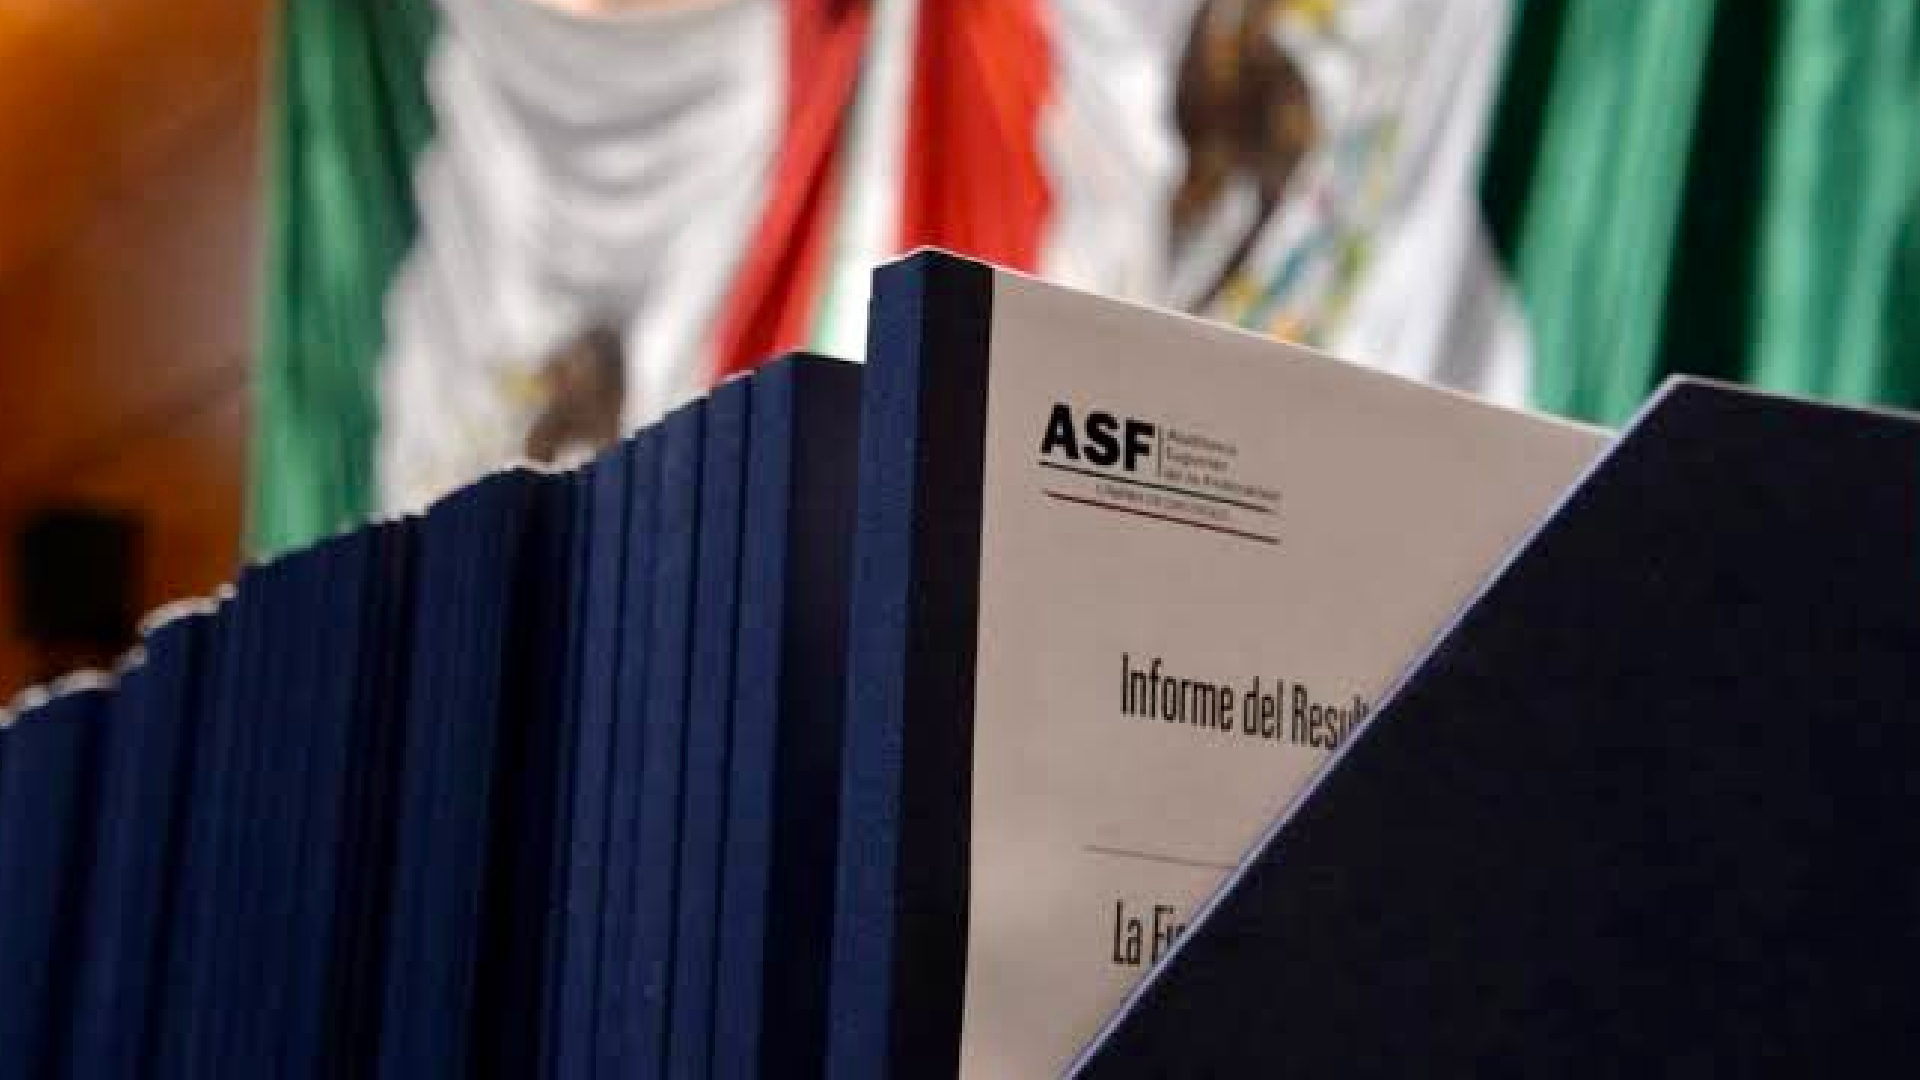 La Auditoría Superior de la Federación (ASF) presentó su tercer informe de resultados ante la Cámara de Diputados (Foto: Twitter / @ASF_Mexico)